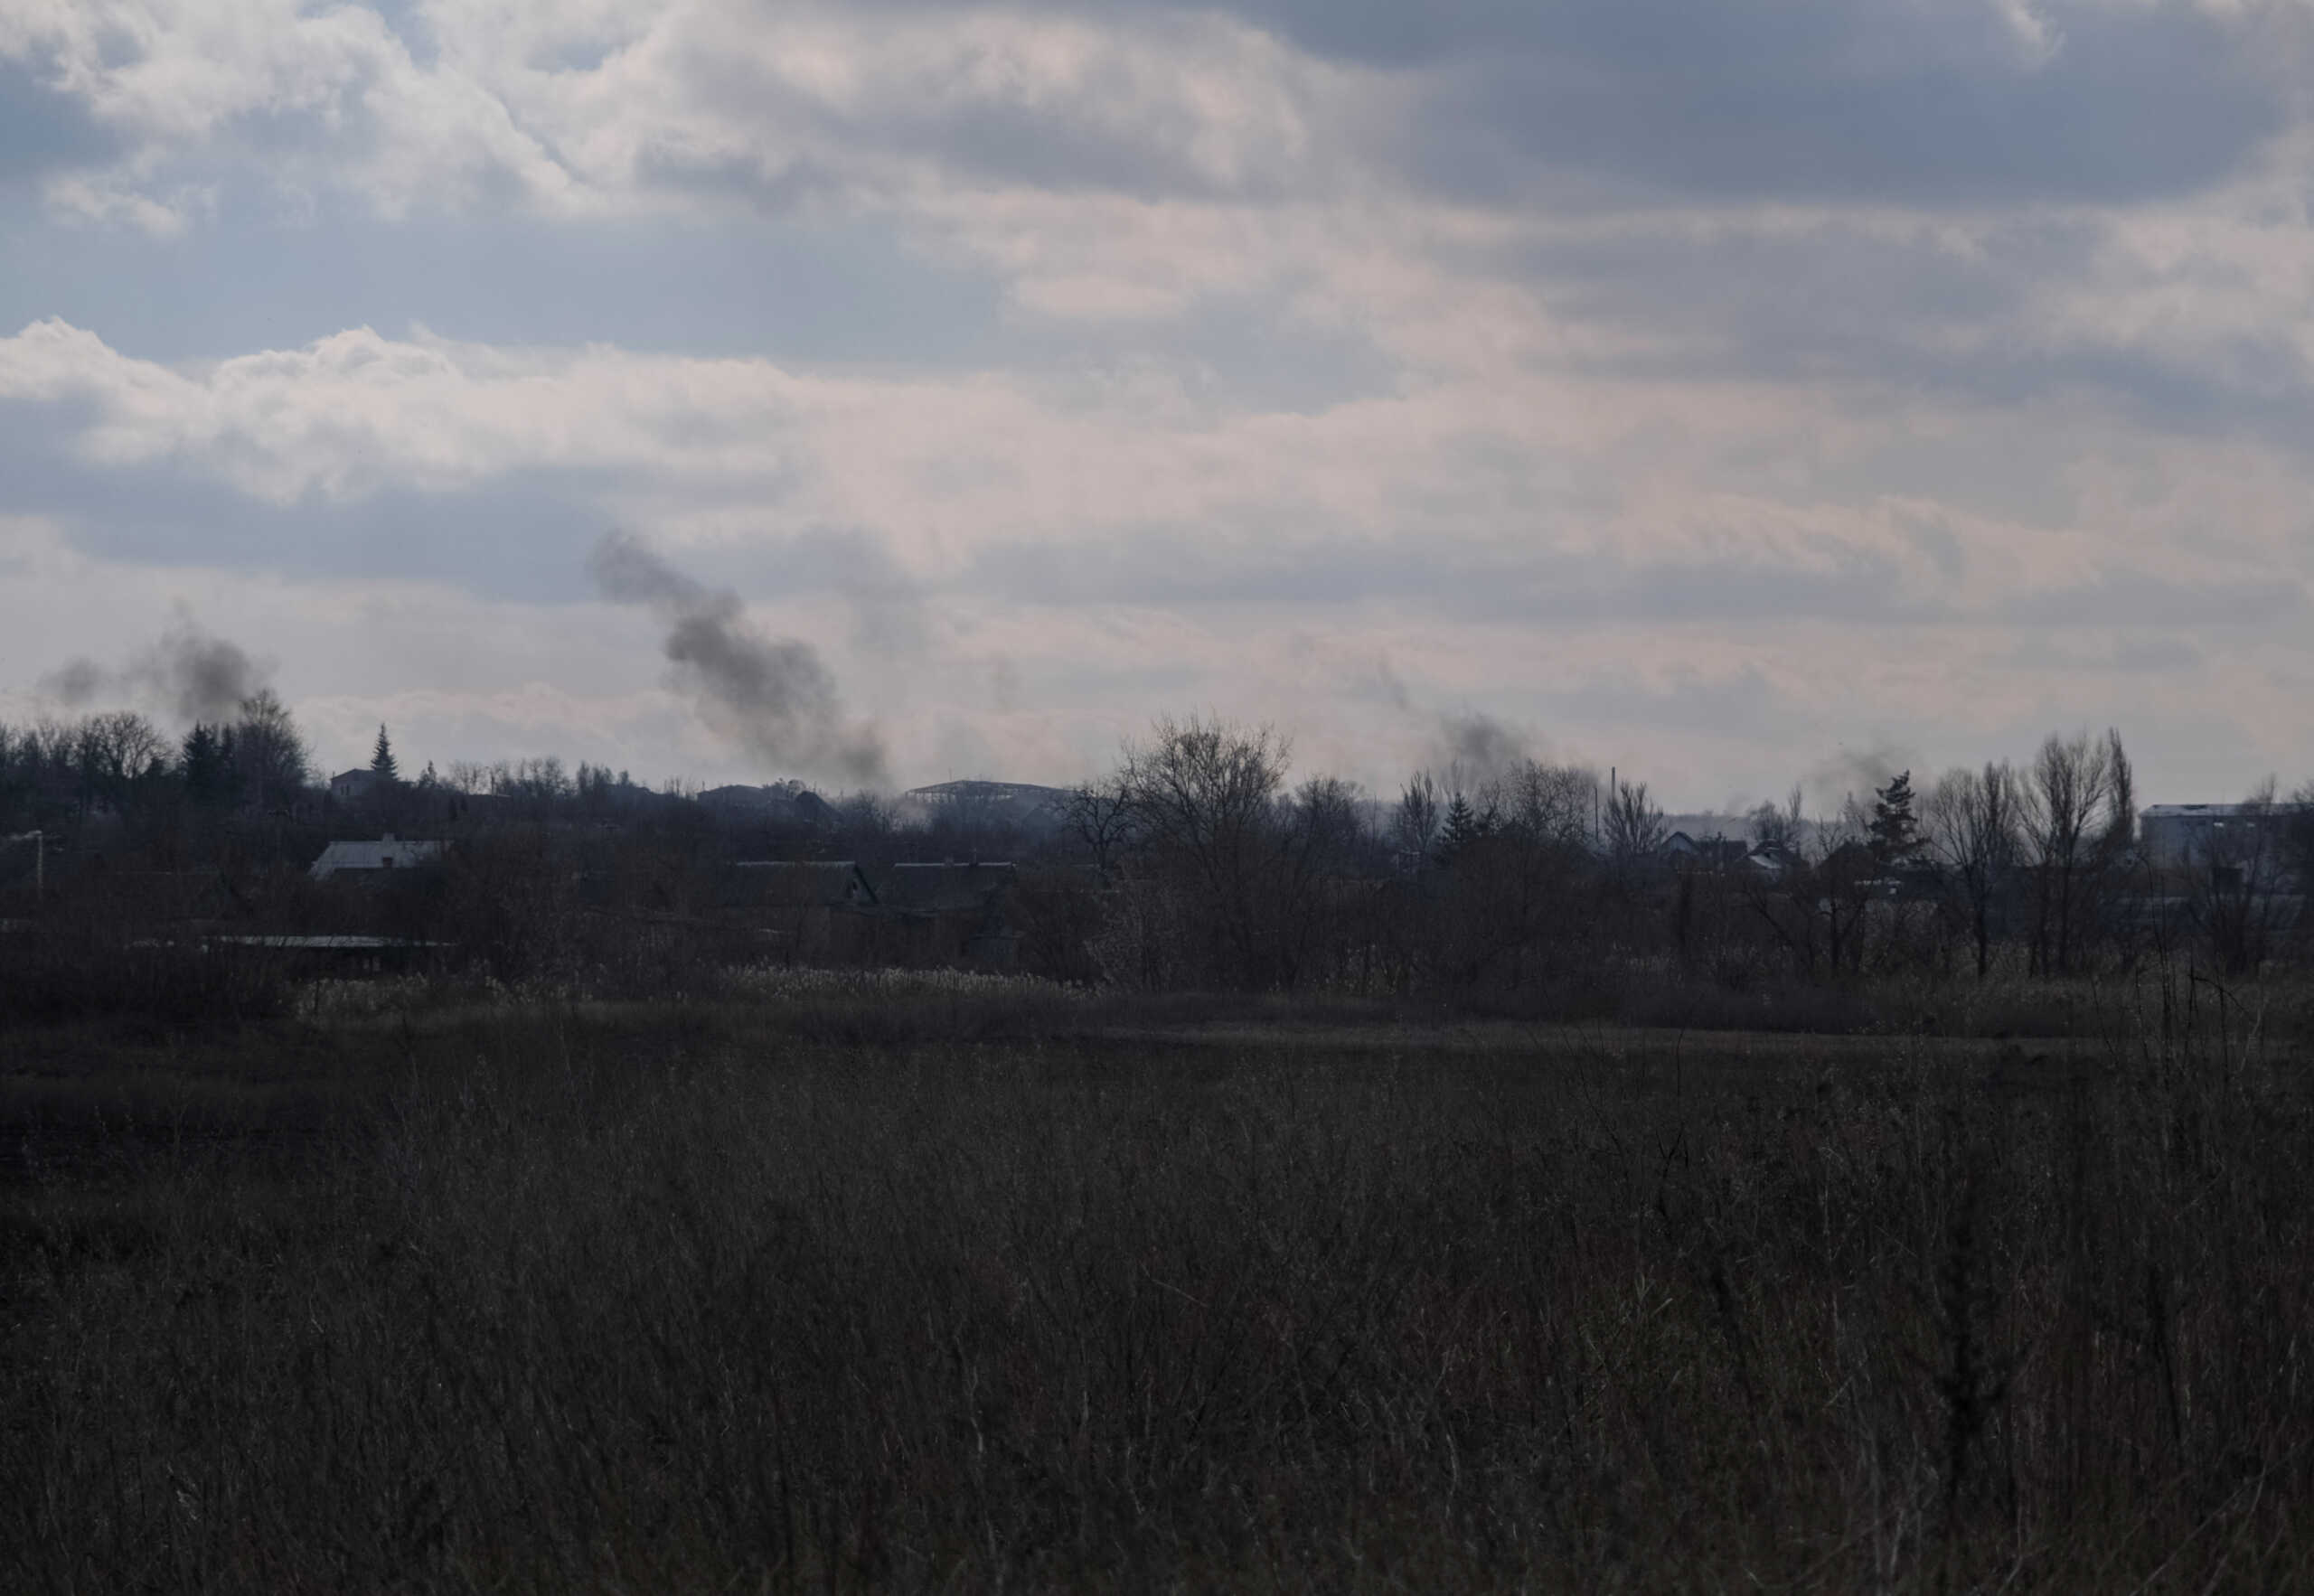 Ουκρανία: Τουλάχιστον 4 νεκροί από ρωσικούς βομβαρδισμούς στο Ντόνετσκ